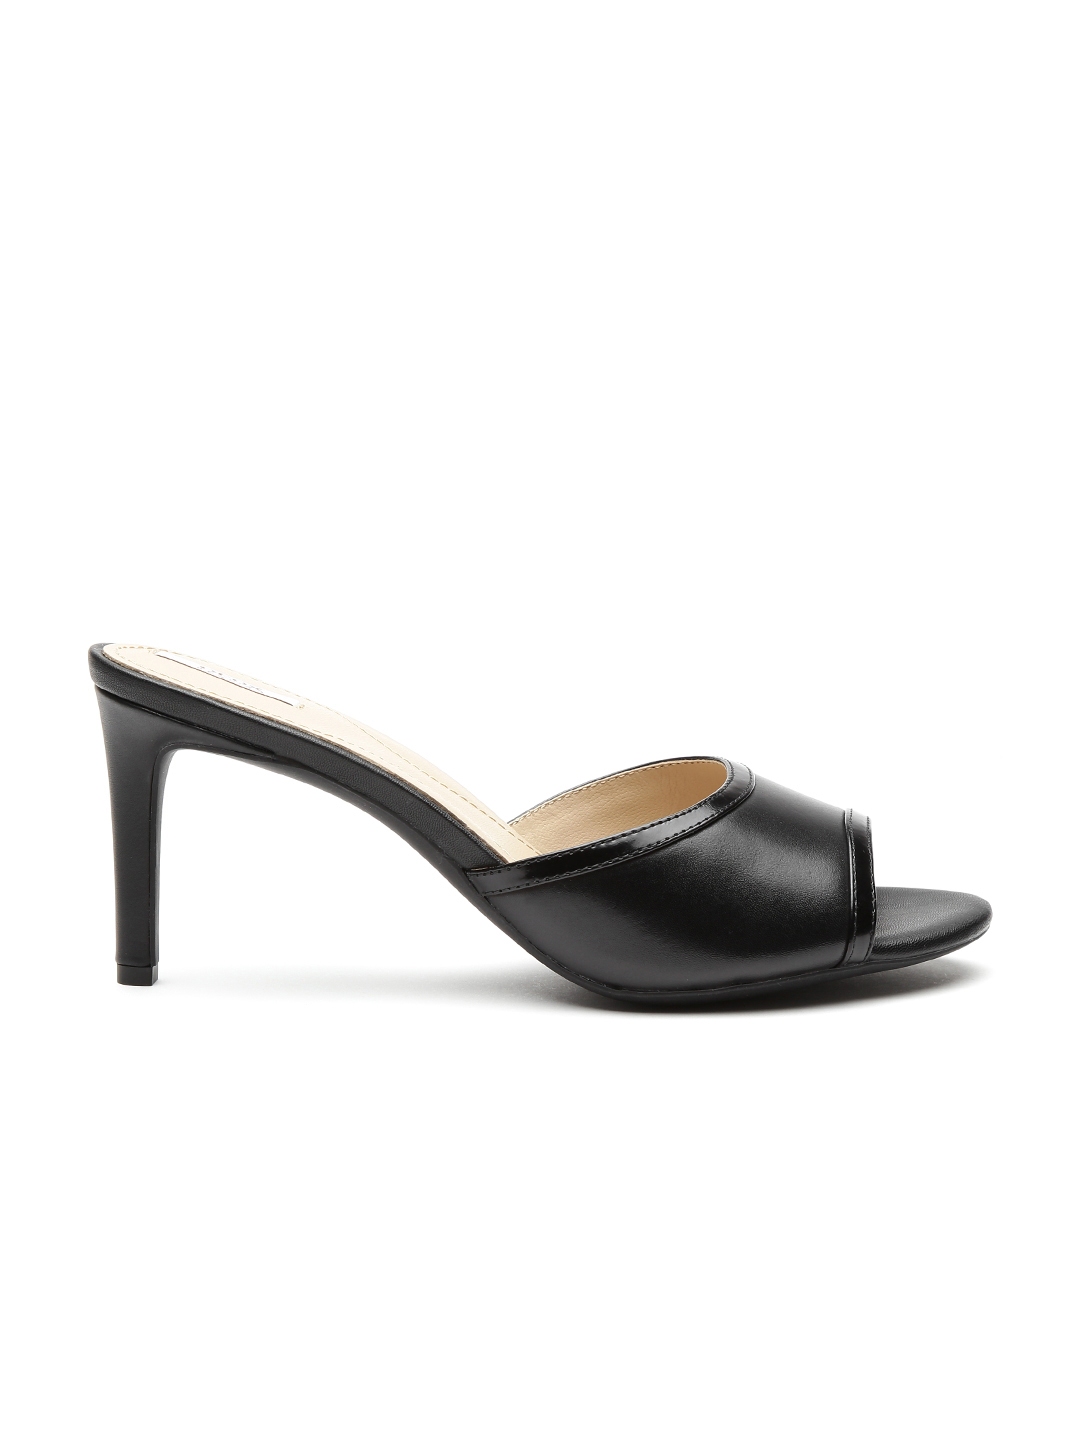 Buy GEOX Respira Women Black Italian Patent Leather Heels - Heels for